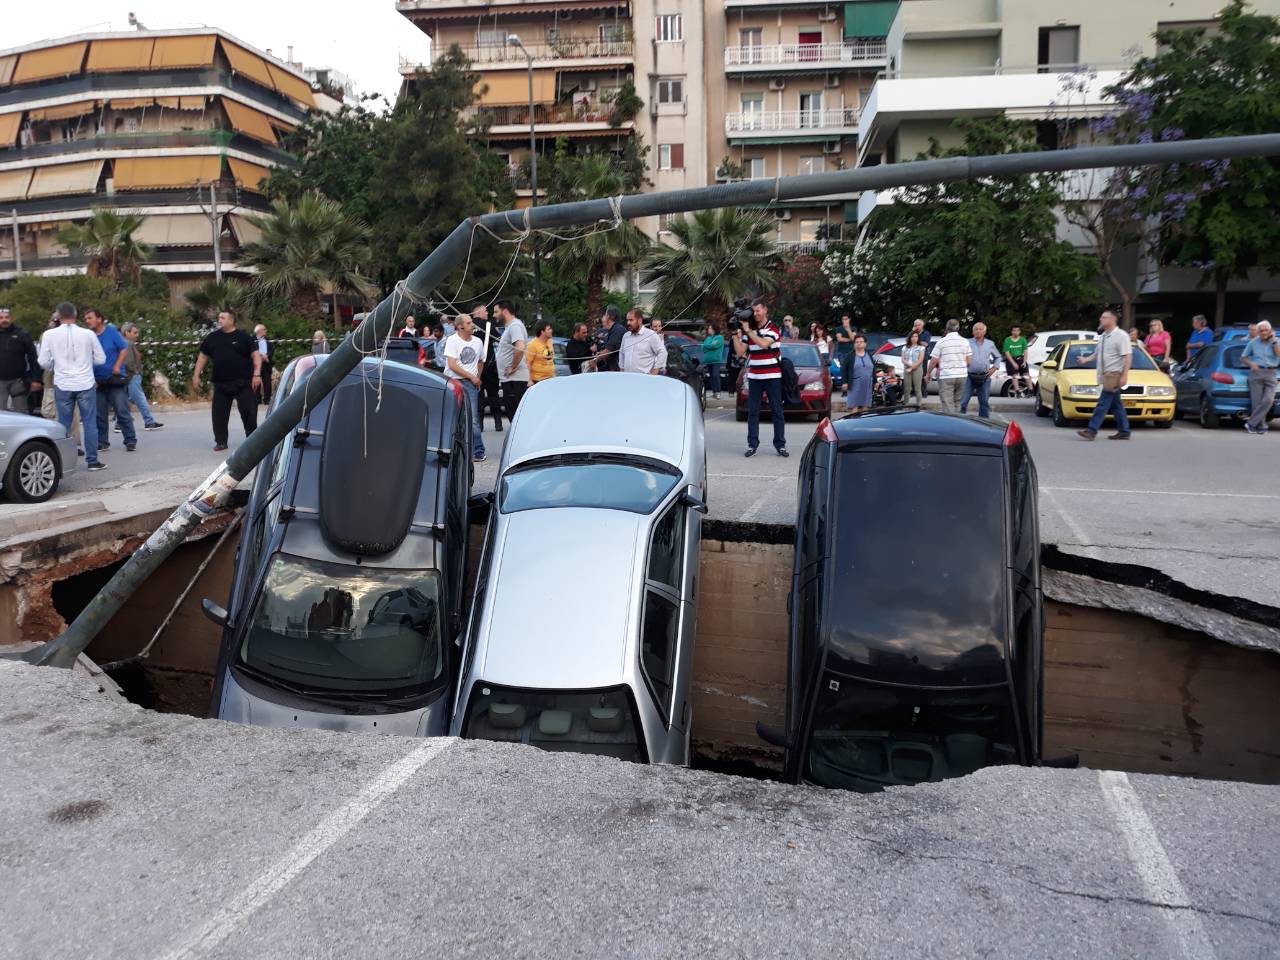 Αθήνα γεμάτη τρύπες: Οι πρόσφατες καθιζήσεις σε κεντρικούς δρόμους προκαλούν ανησυχία (φωτό)